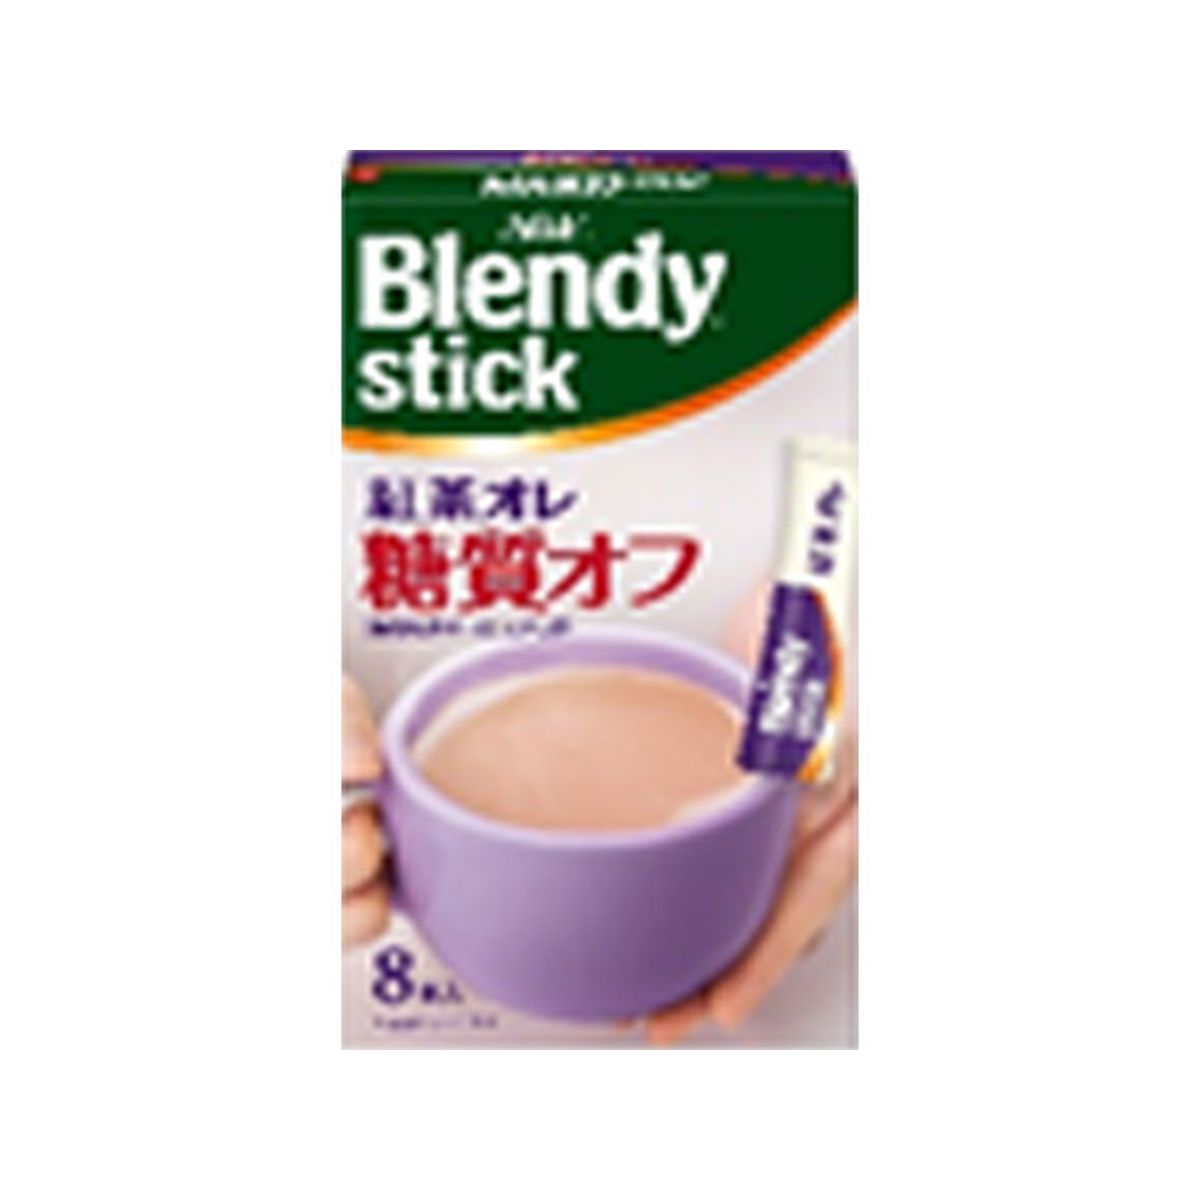 【6個入り】AGF ブレンディ スティック 紅茶オレ 糖質オフ 8本